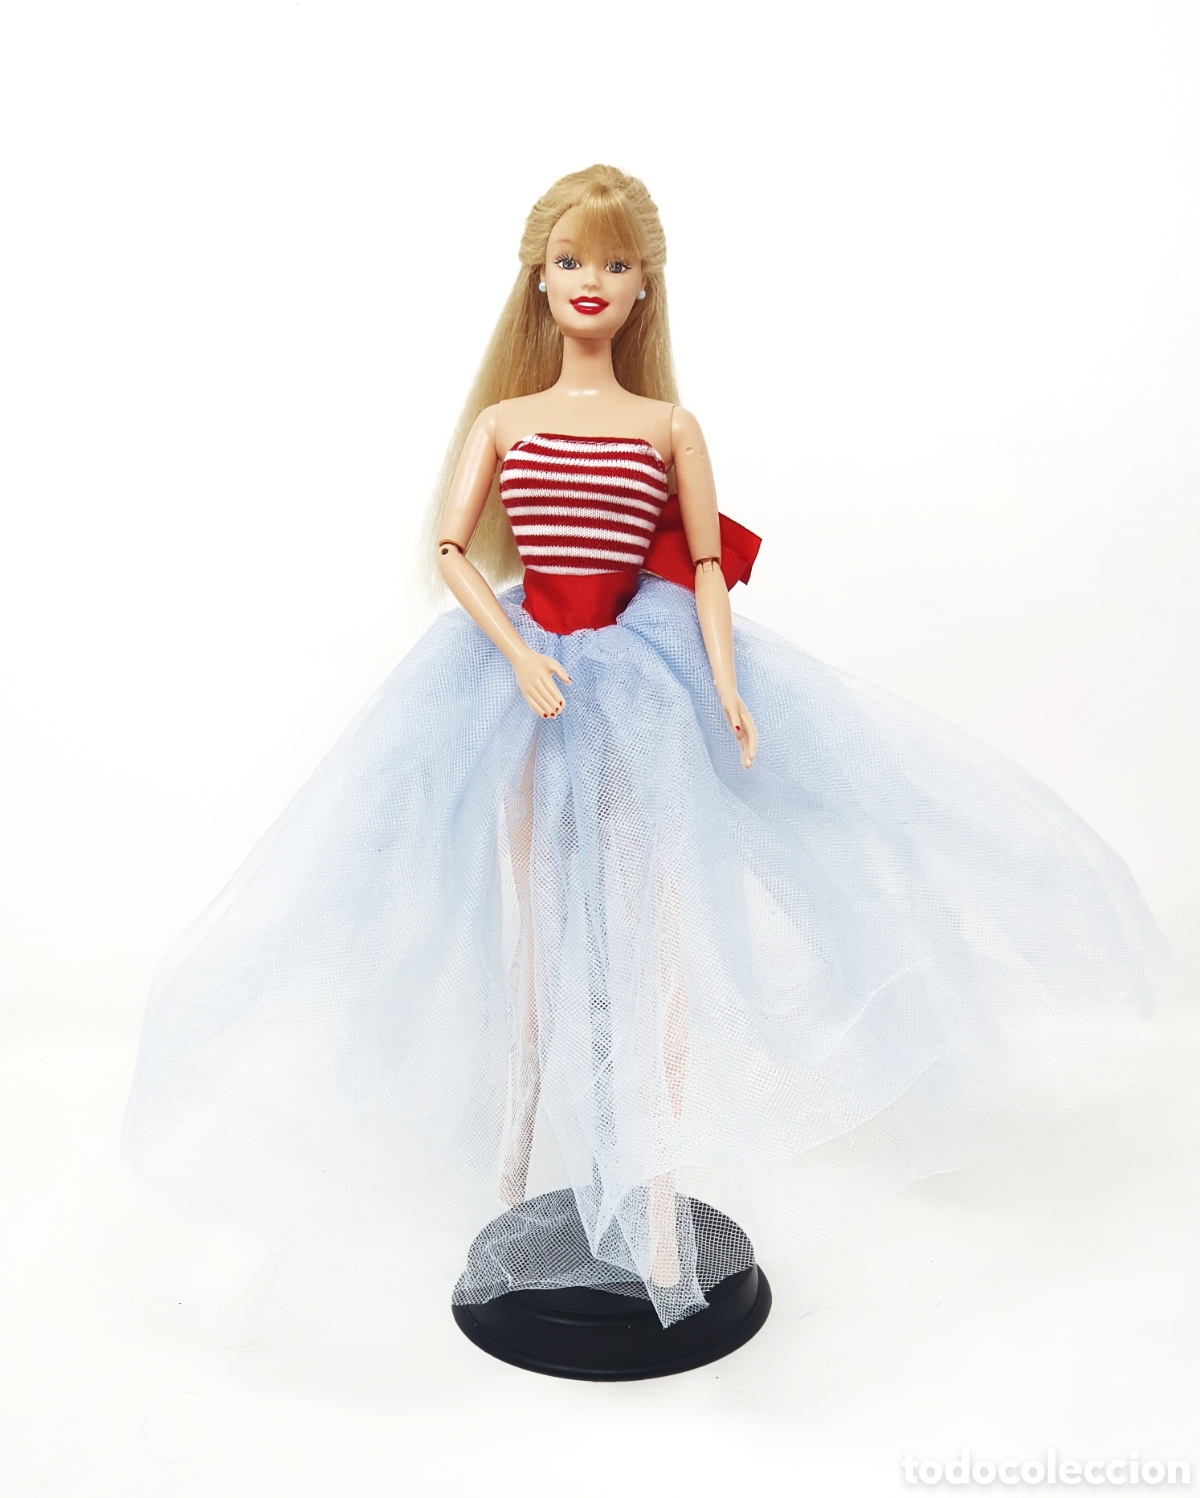 barbie malibu reedicion 2008 - Comprar Bonecas Barbie e Ken no todocoleccion